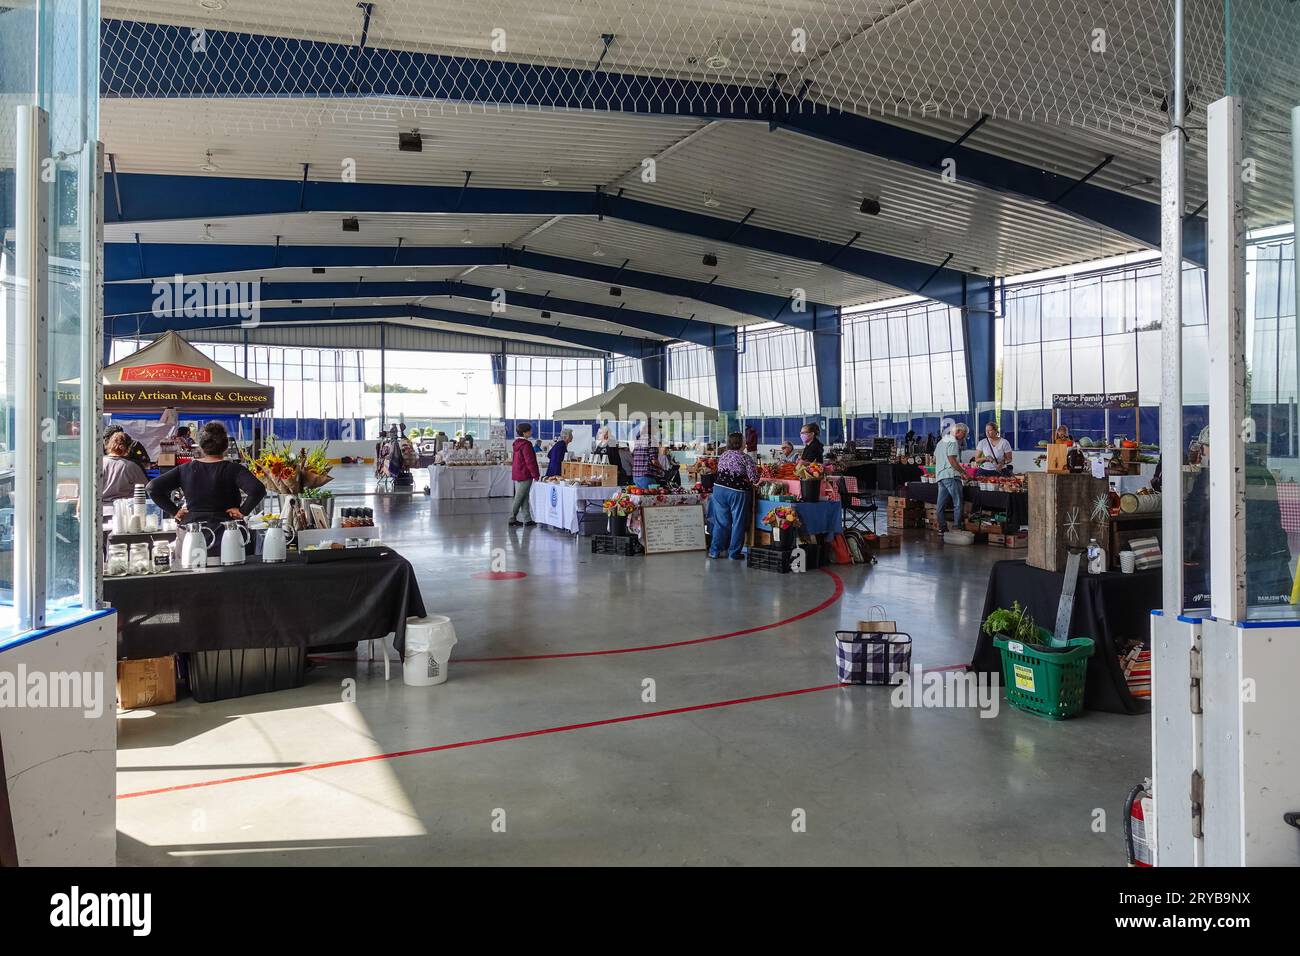 Un marché fermier intérieur de fin de semaine a été organisé à l'intérieur d'une aréna de hockey au Canada Banque D'Images